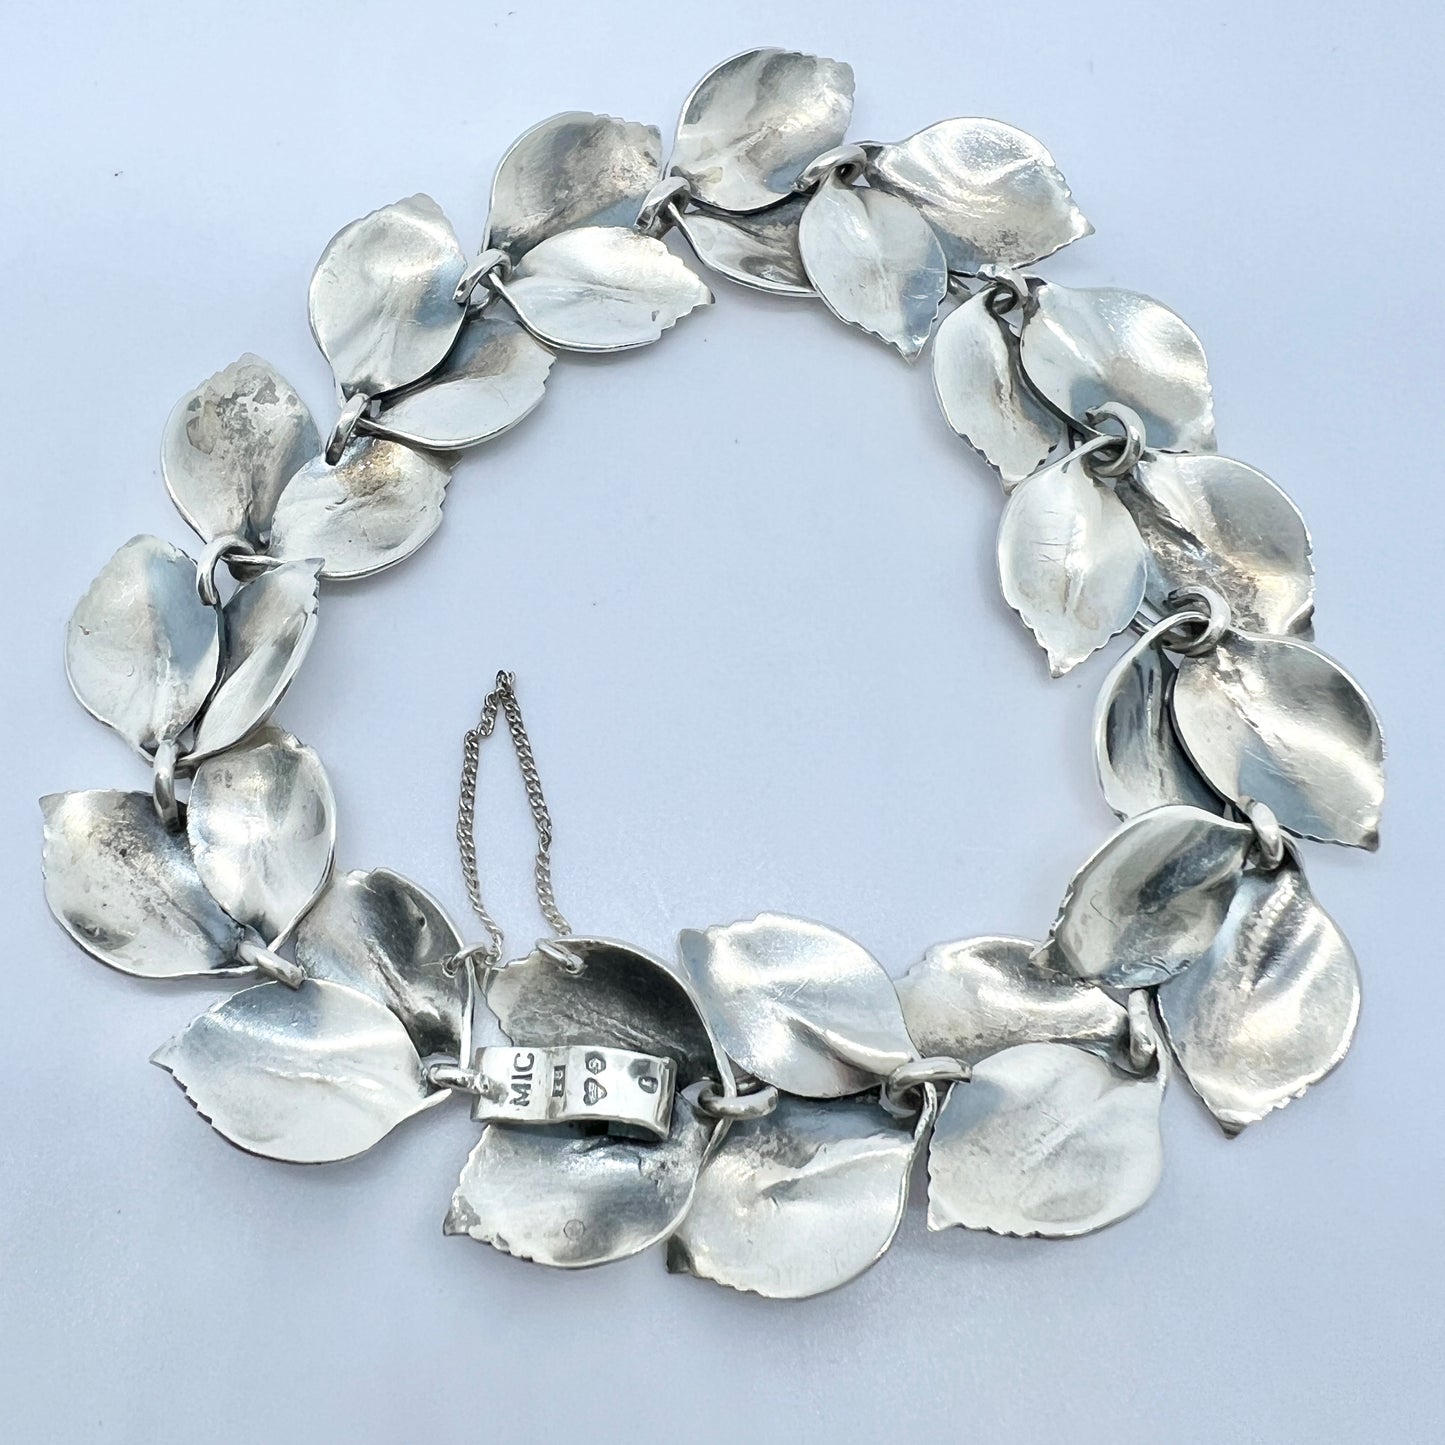 Michelsen, Sweden 1949. Vintage Sterling Silver Bracelet. Design by Gertrud Engel